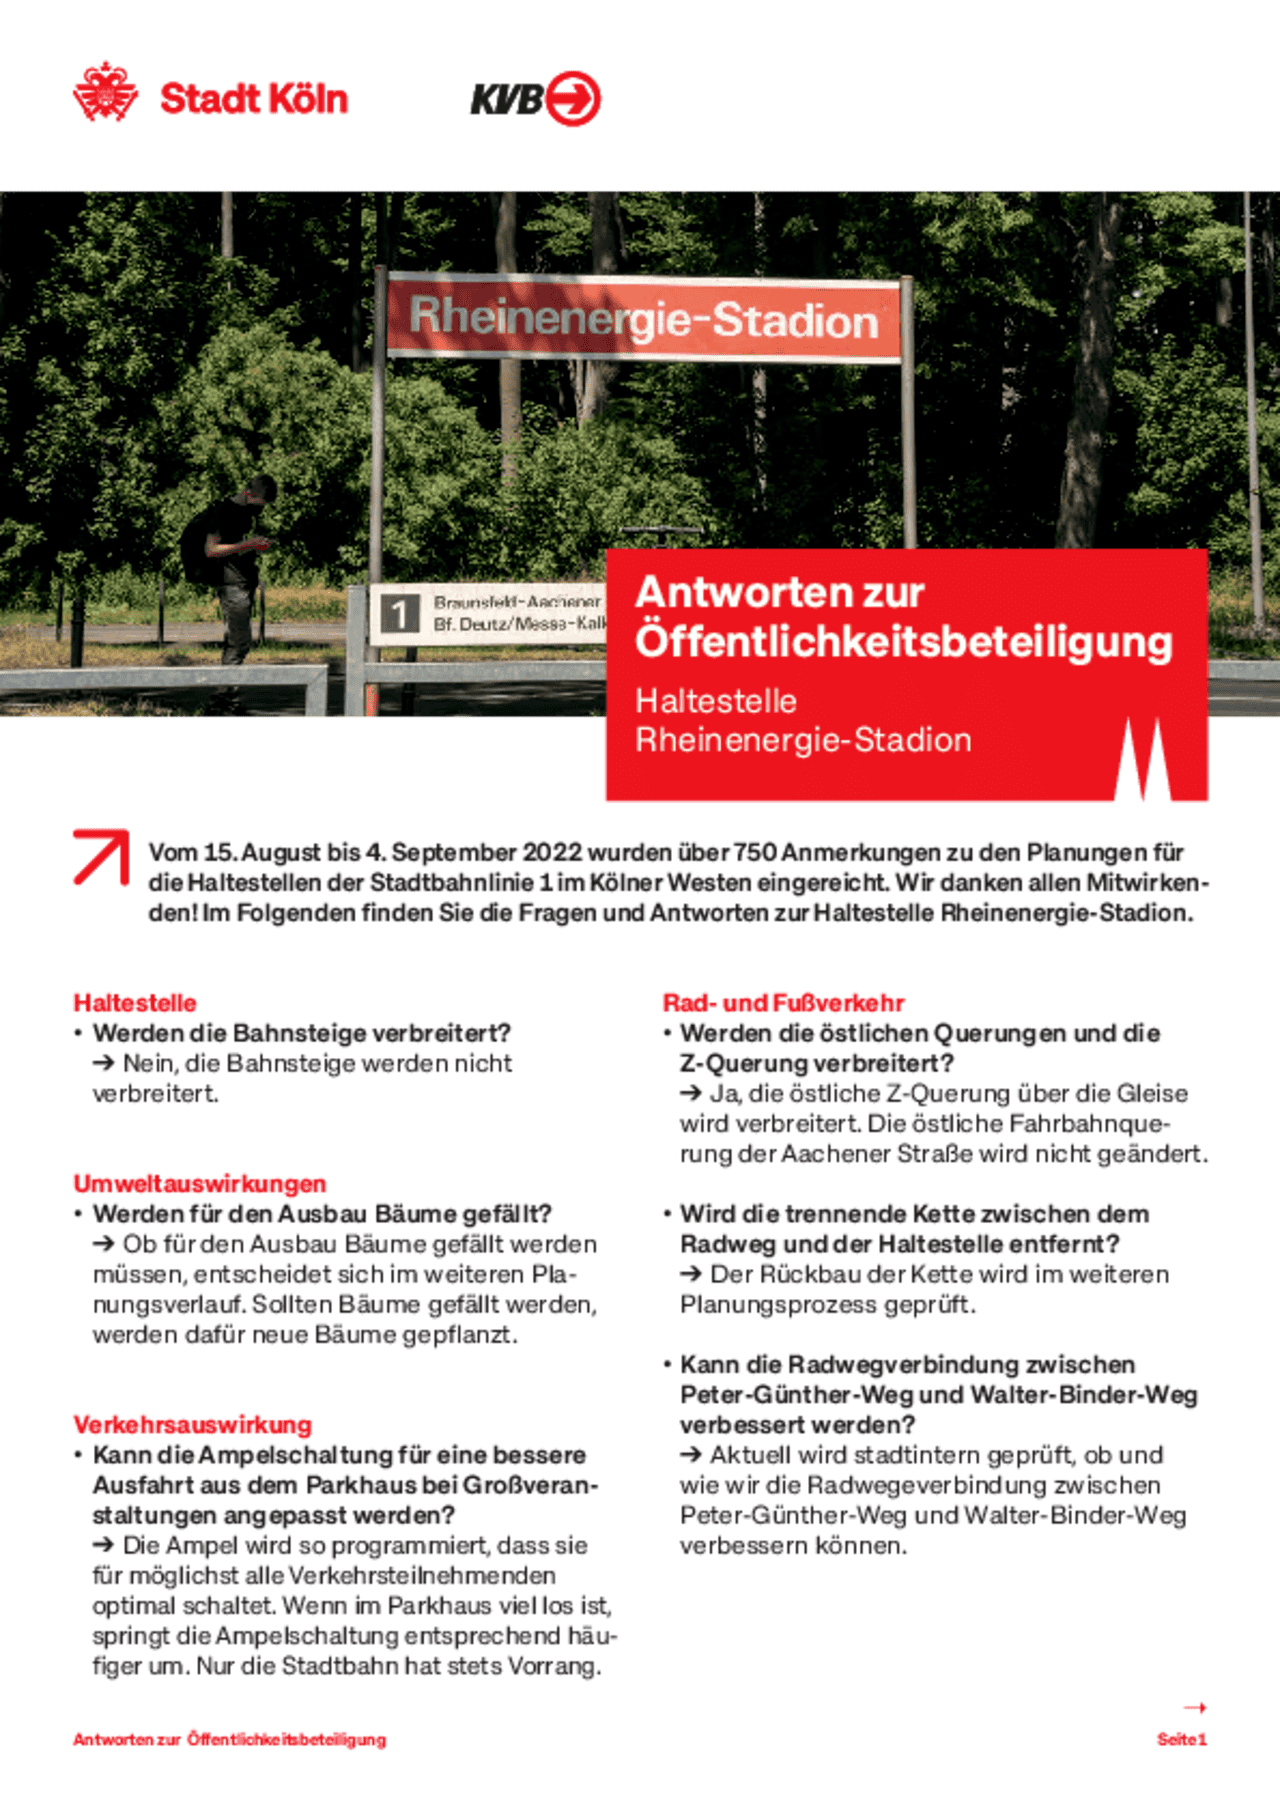 Bildvorschau des Infoblatts zur Haltestelle Rheinenergie-Stadion – Ost-West-Achse Köln